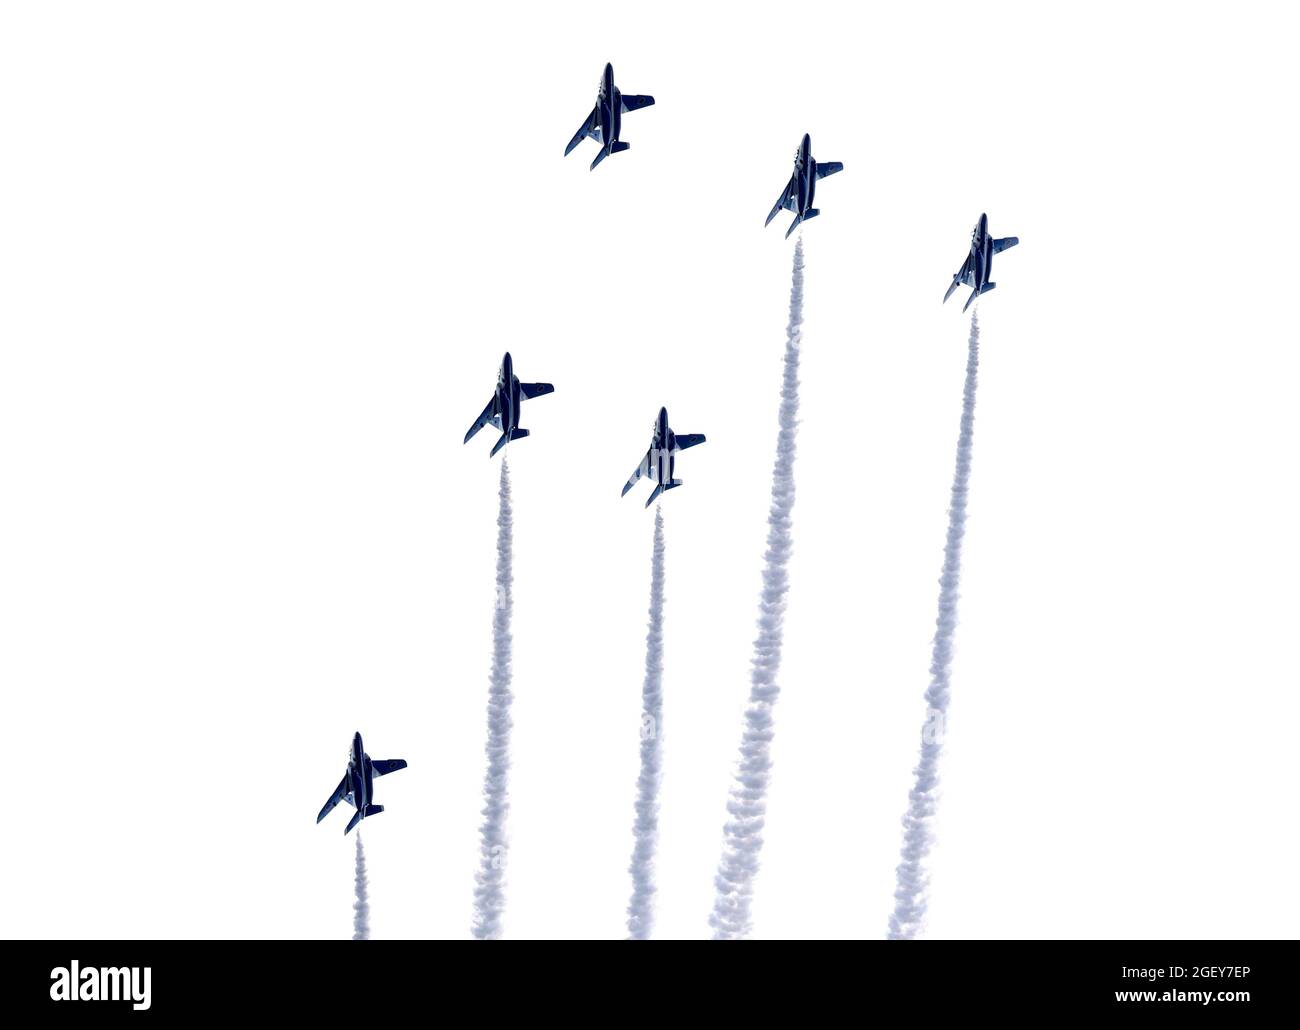 22 août 2021, Tokyo, Japon - l'équipe aérobie Blue Impulse de la Force aérienne japonaise de défense aérienne démontrera à fumer dans le ciel à Tokyo pour une série sèche de vols de célébration pour les Jeux paralympiques de Tokyo 2020 à venir, le dimanche 22 août 2021. Les Jeux paralympiques de Tokyo débuteront du 24 août au 5 septembre. (Photo de Yoshio Tsunoda/AFLO) Banque D'Images